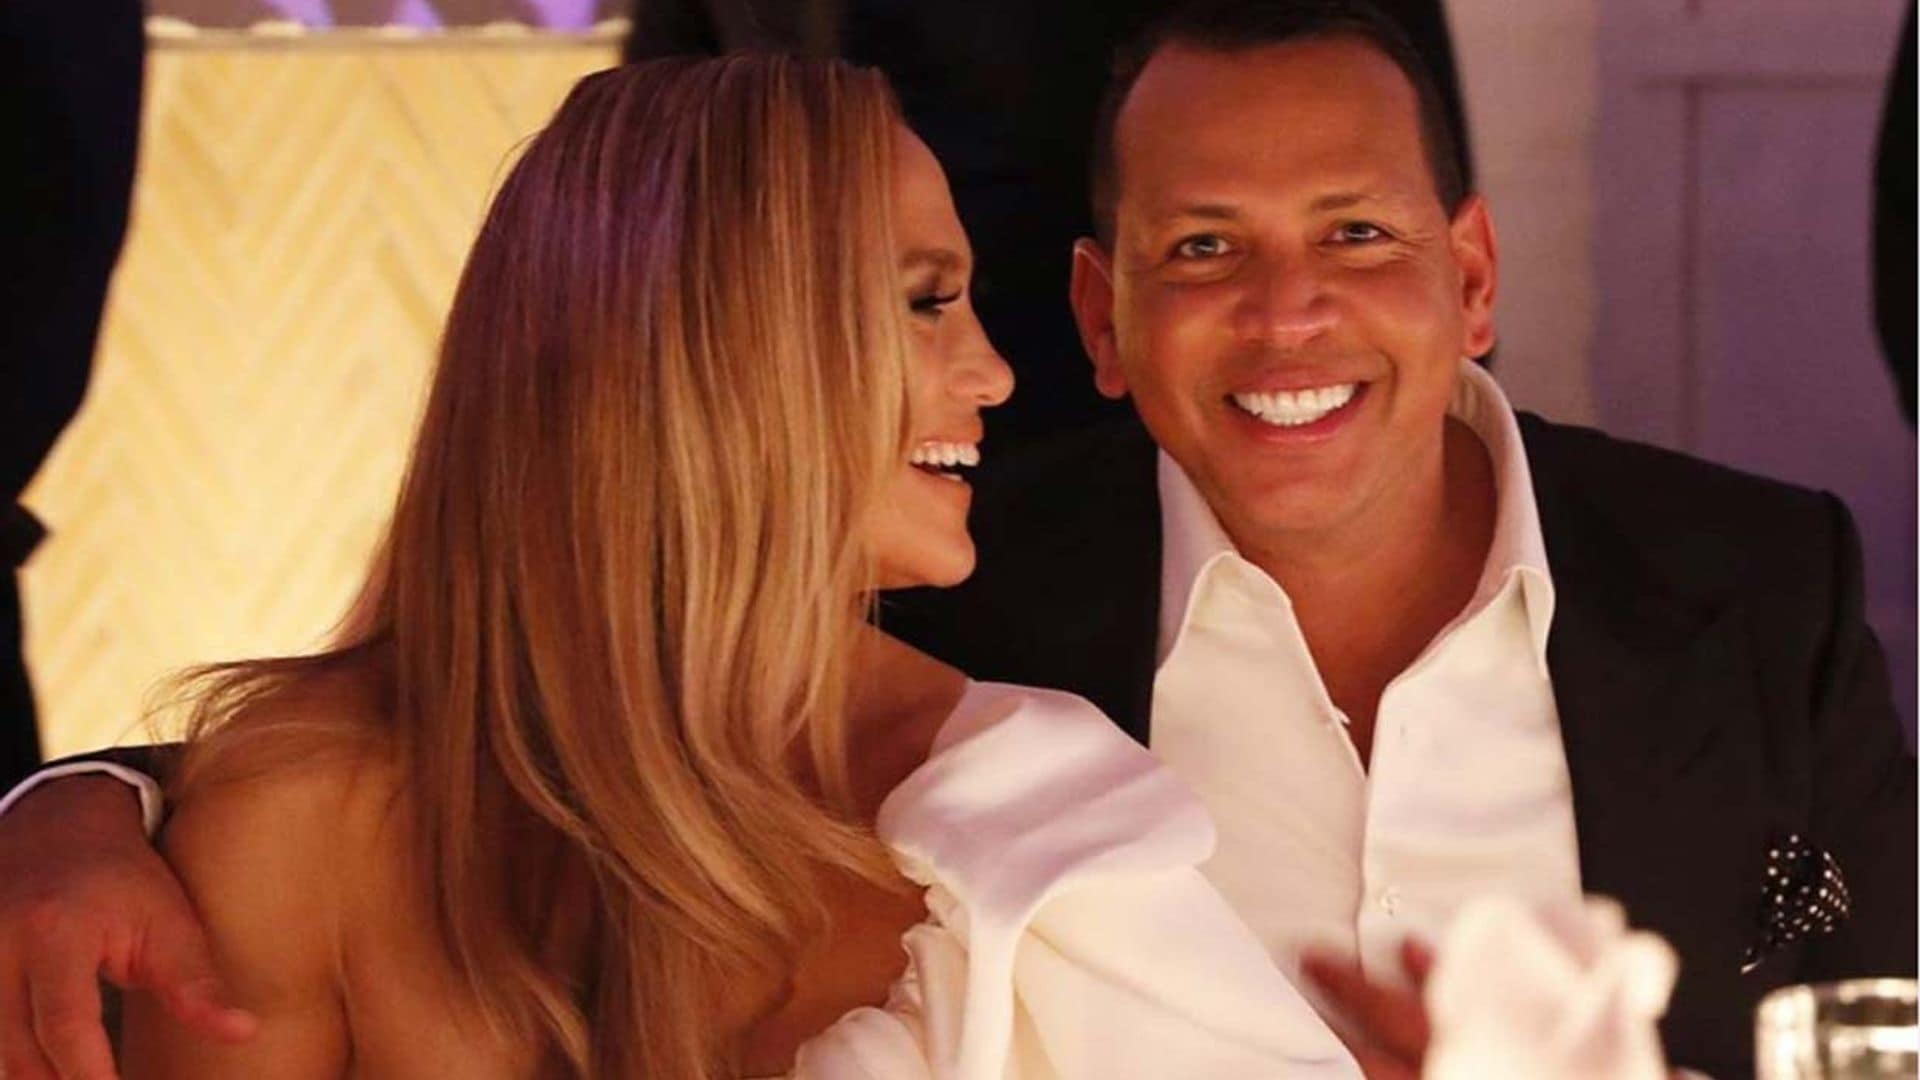 Alex Rodríguez comparte sus momentos más románticos con Jennifer Lopez en el aniversario de su compromiso